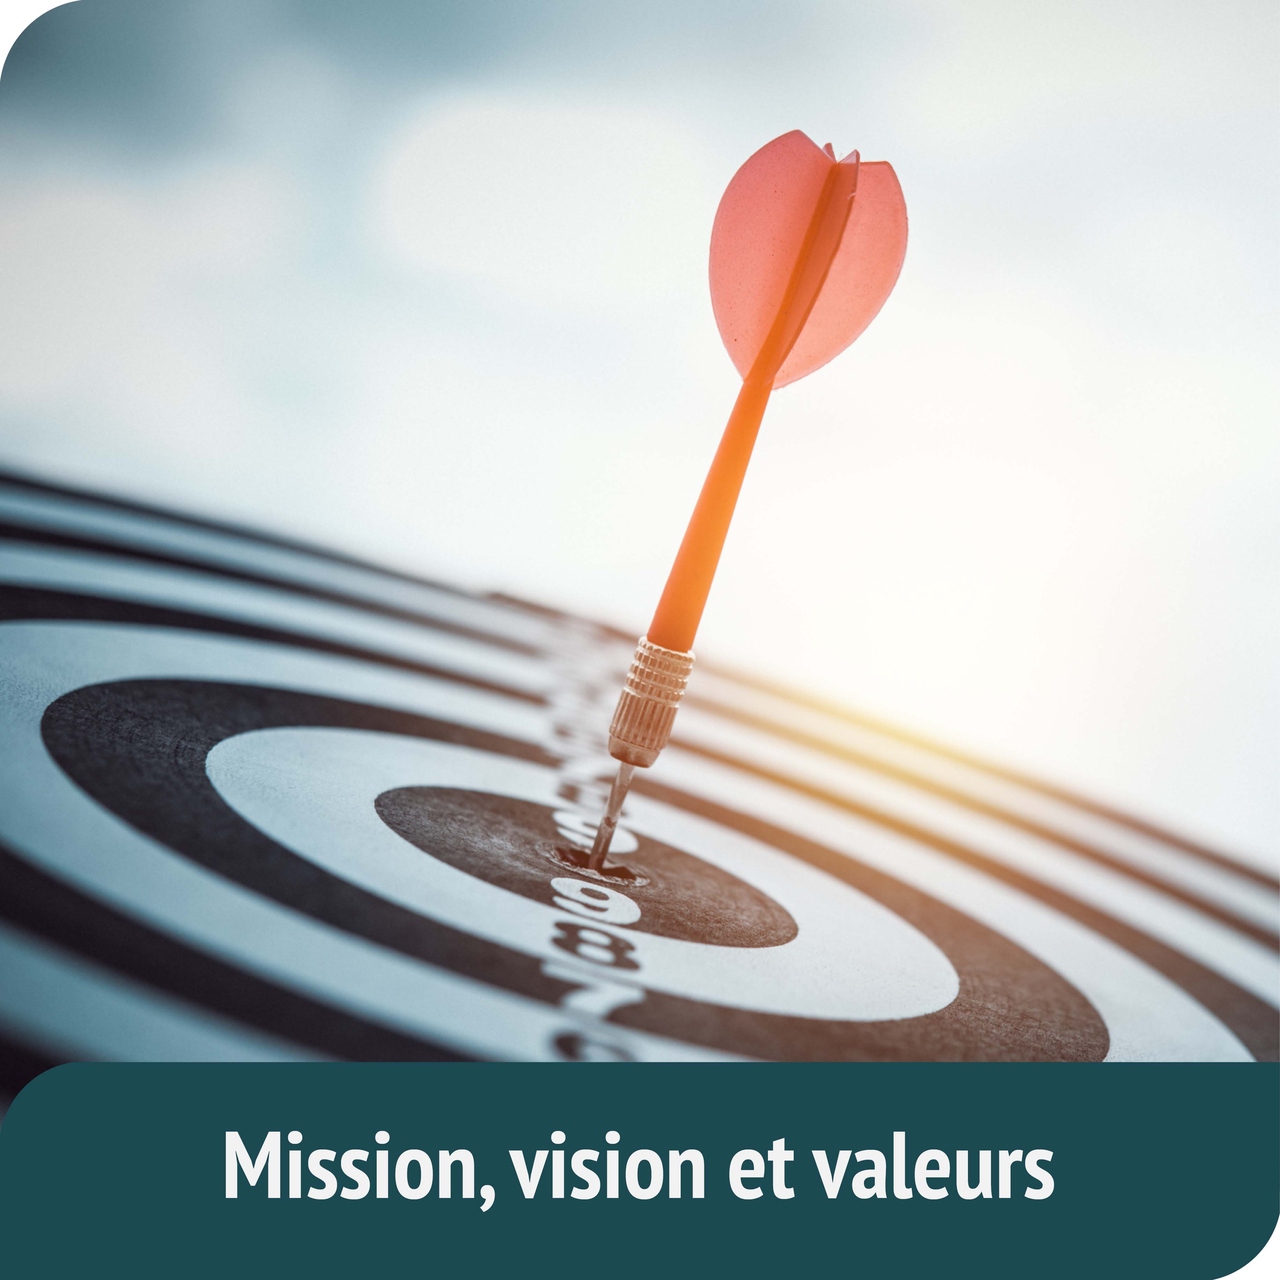 Mission, vision et valeurs